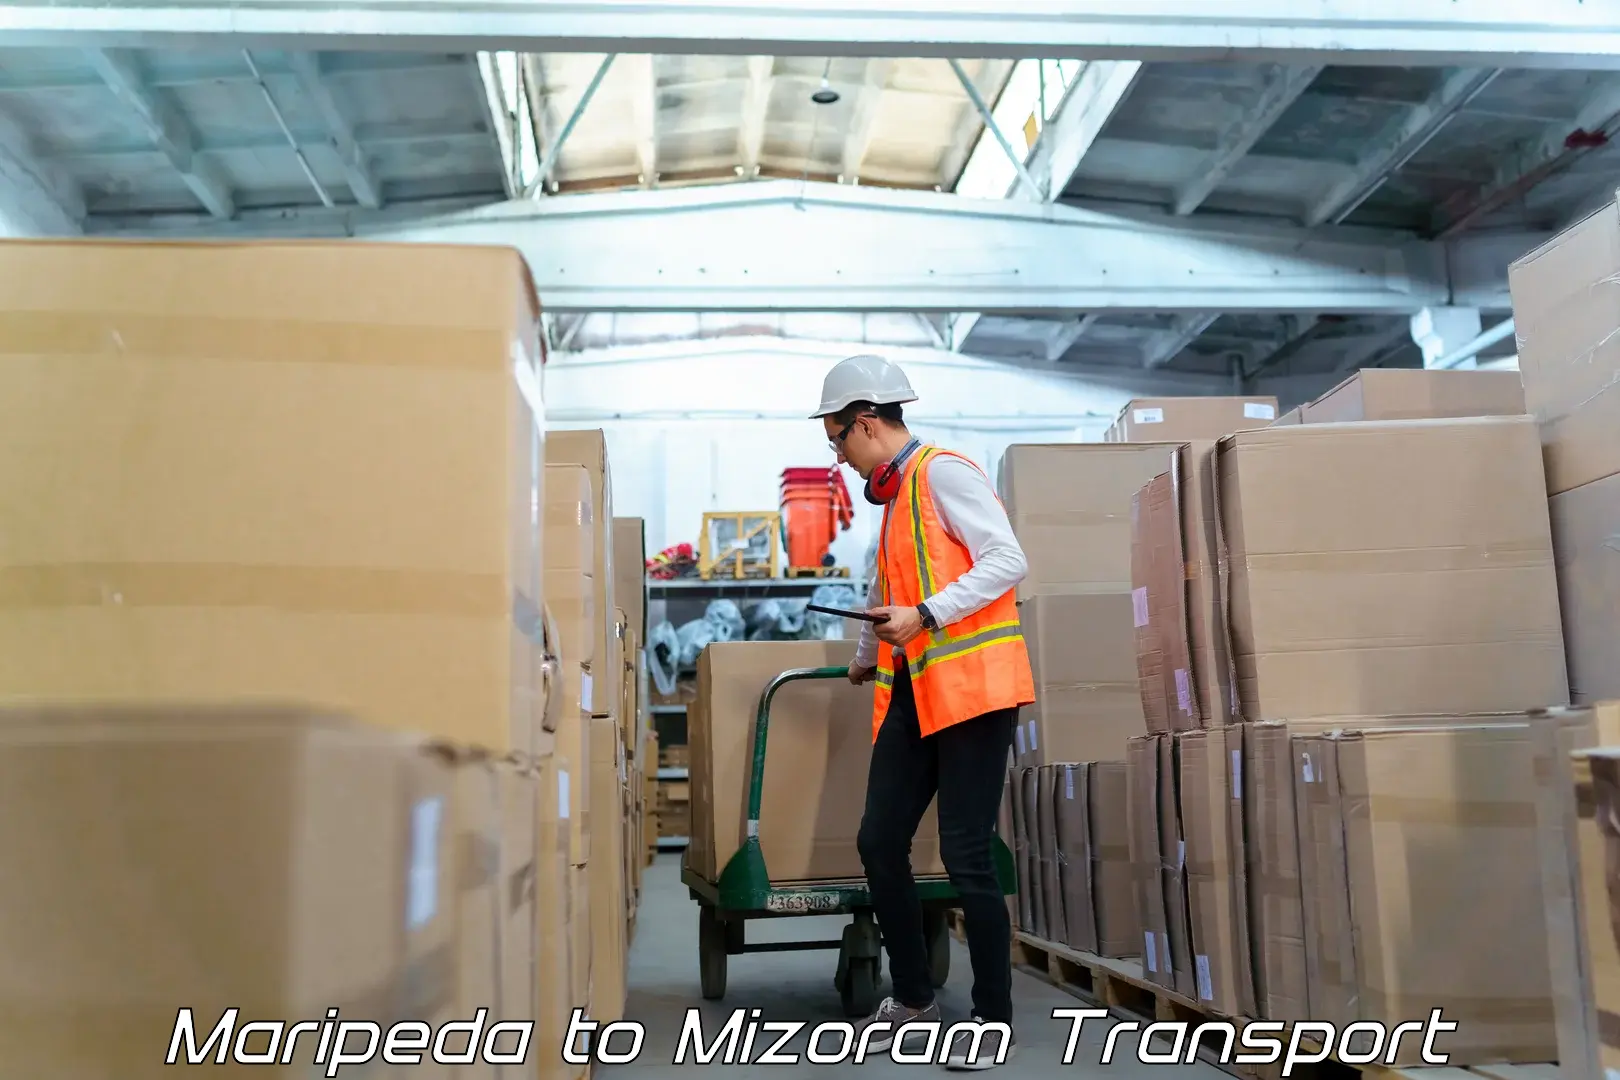 Shipping partner Maripeda to Mizoram